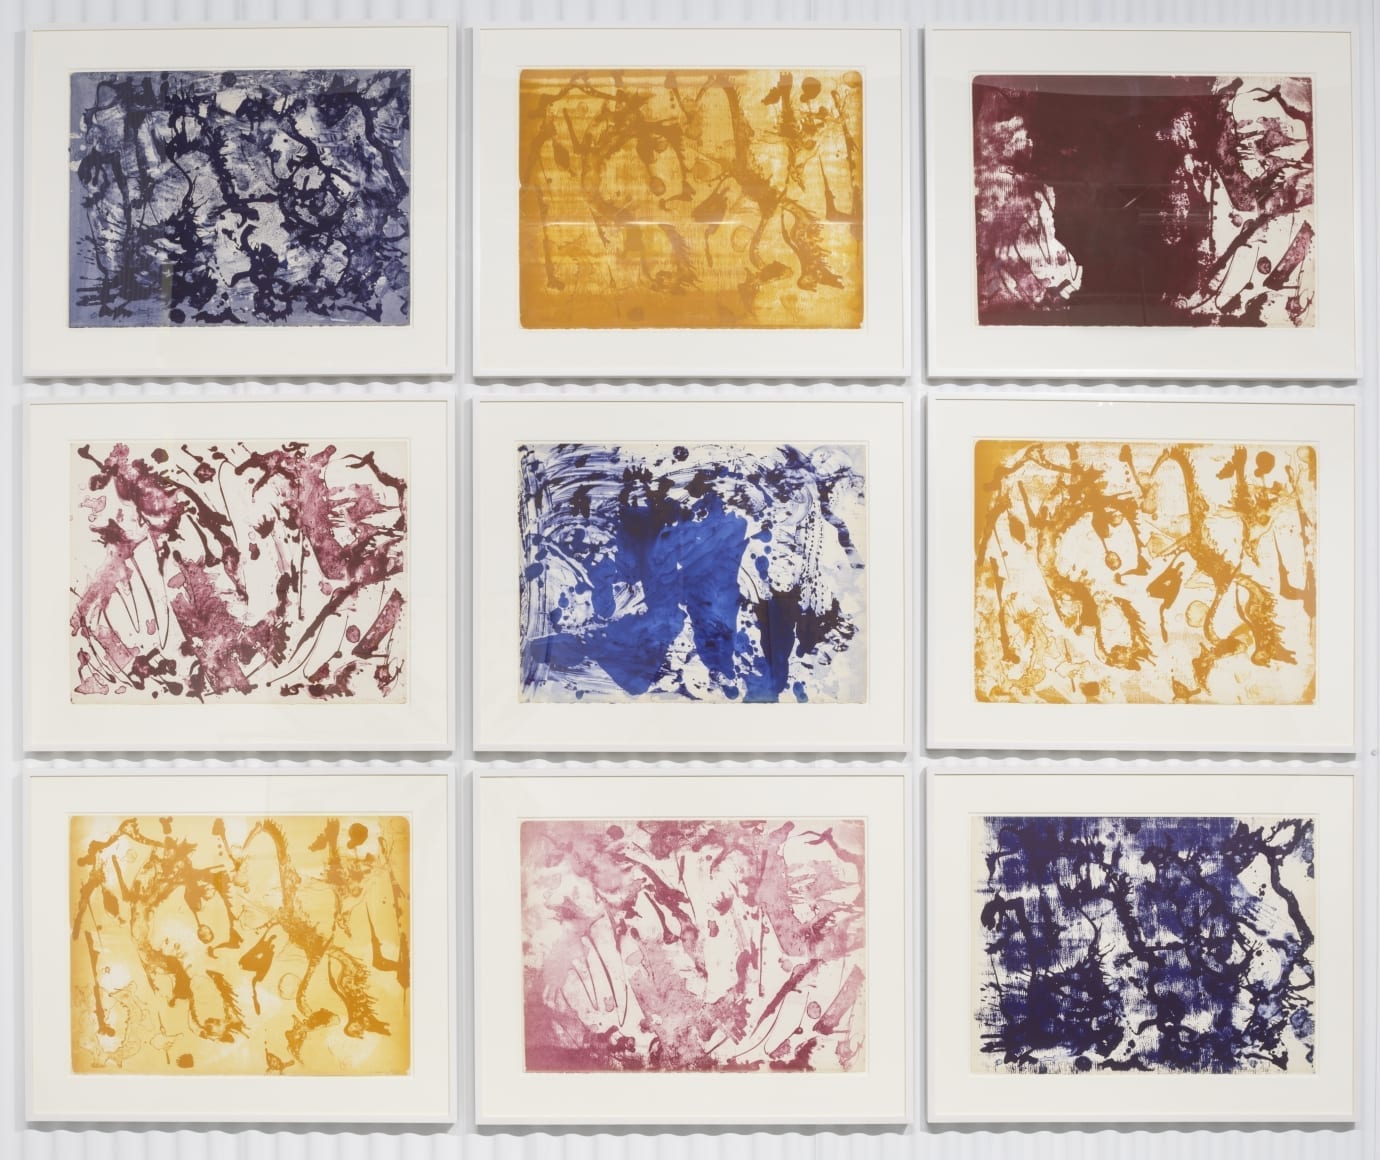 Lee Krasner, Long Lines for Lee Krasner, 1970, Complete set of nine lithographs in color